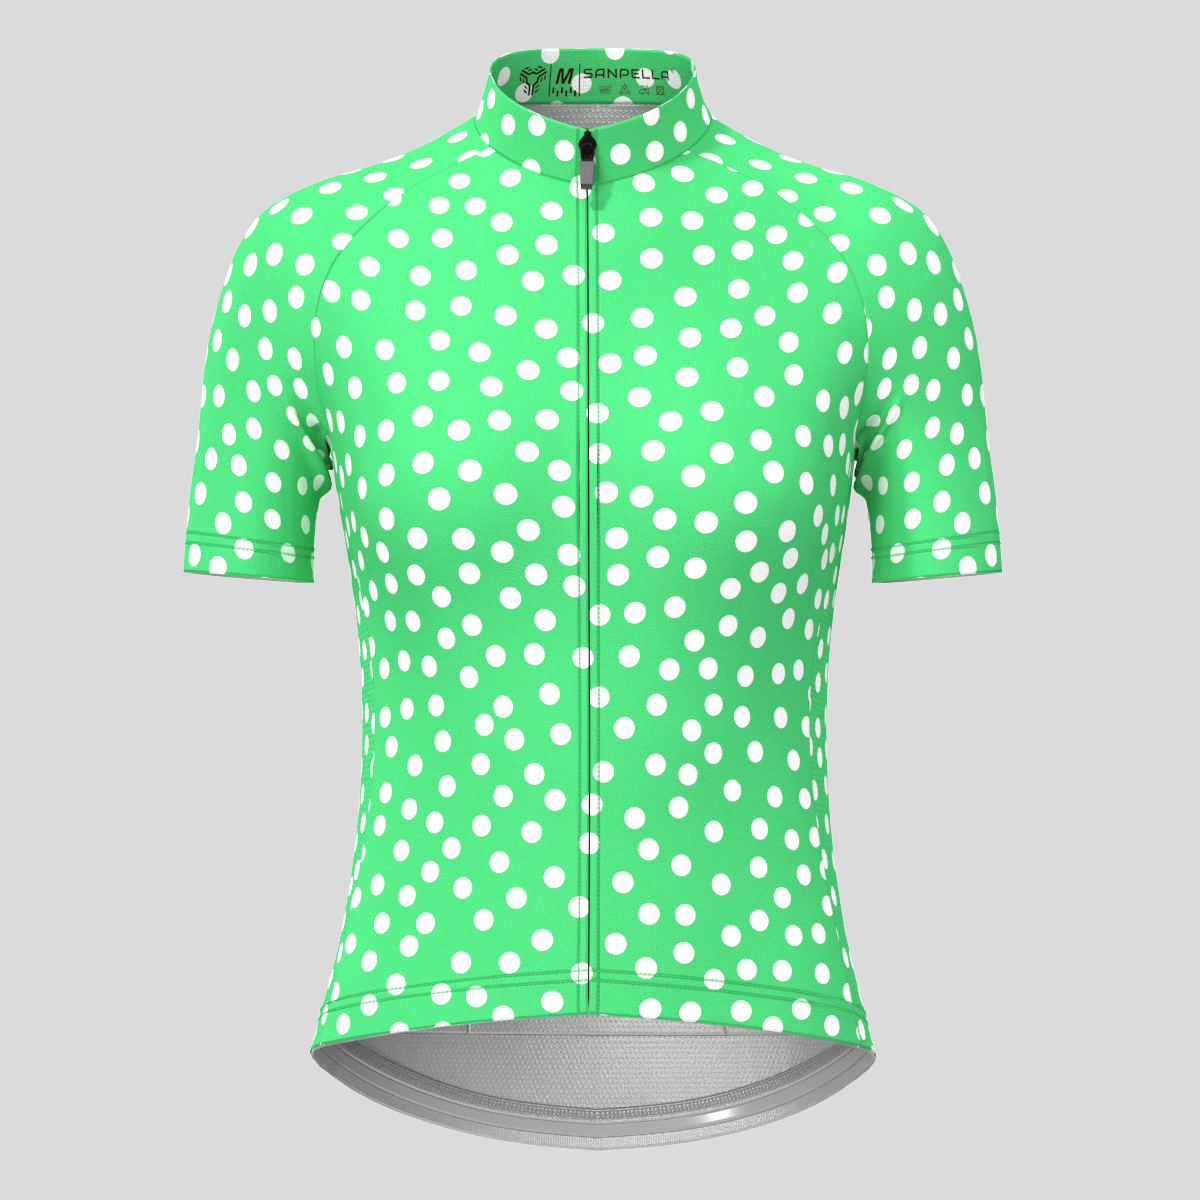 Women's Classic Polka Dots Cycling Jersey - Green